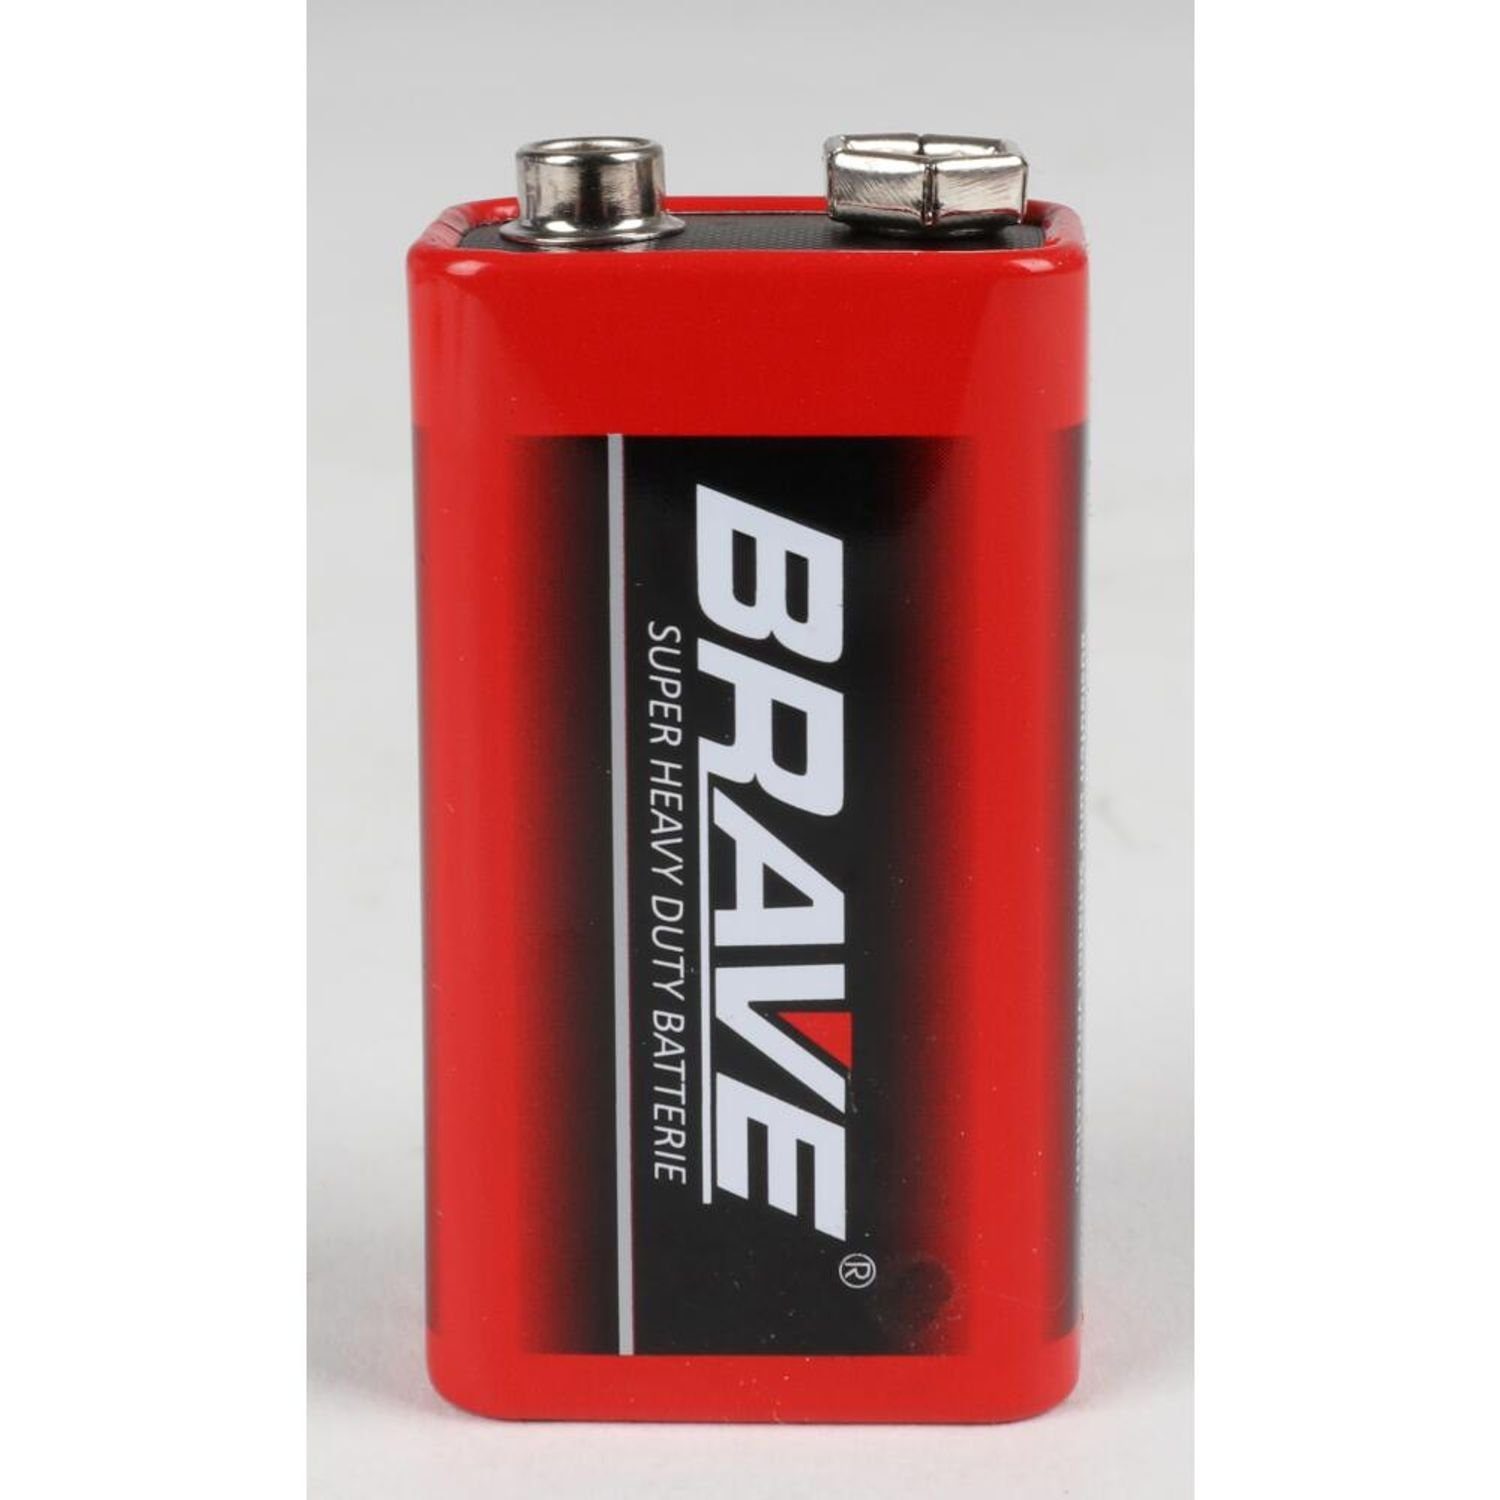 BURI 10x Brave 6F22 9V Batterie, Industrial Super Strom Stark (20 Batterien St) Universal 2er